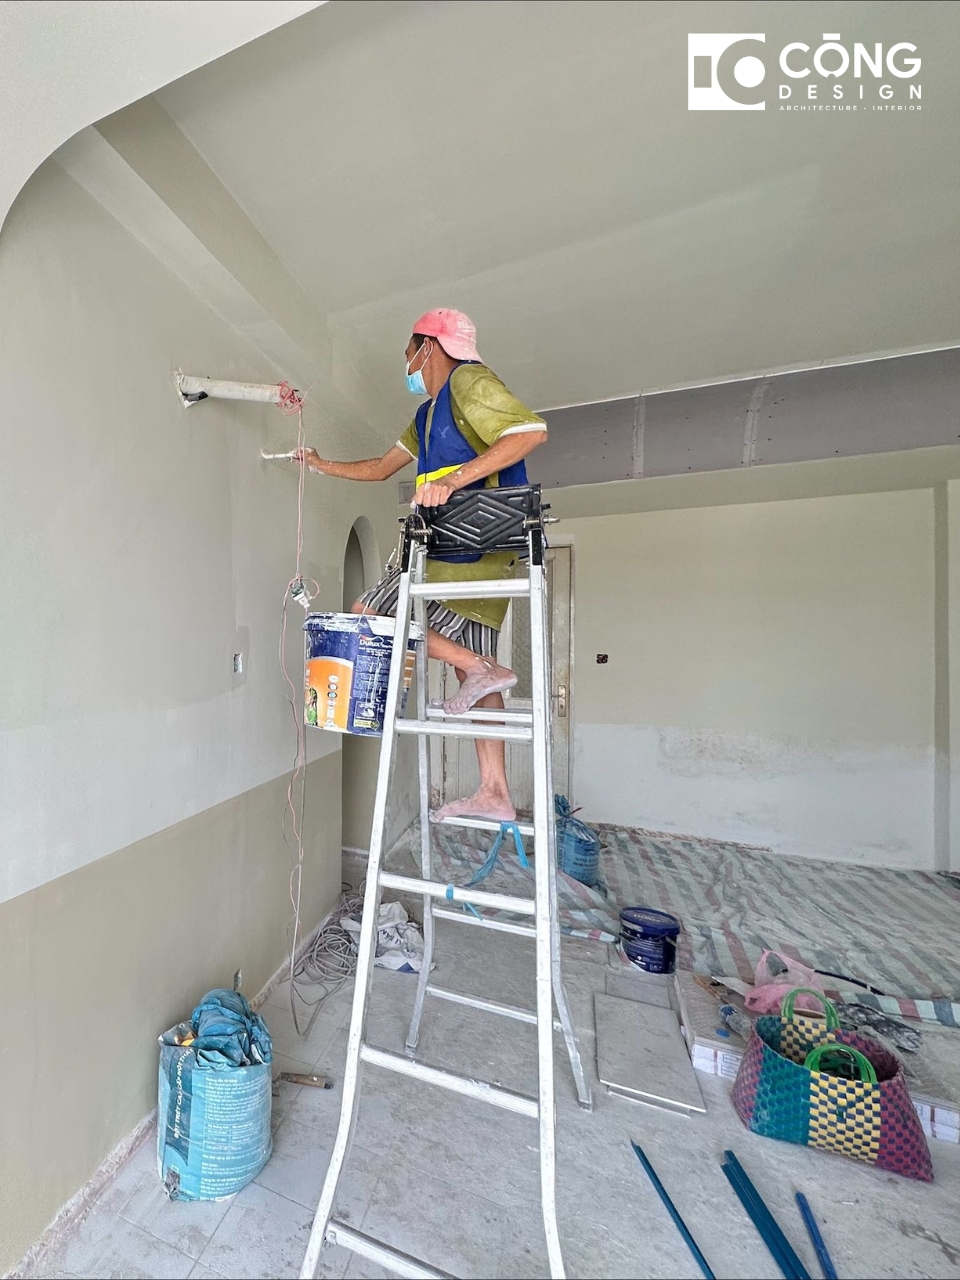 Thi công sơn nước dự án thi công cải tao căn hộ Trương Định Quận 3